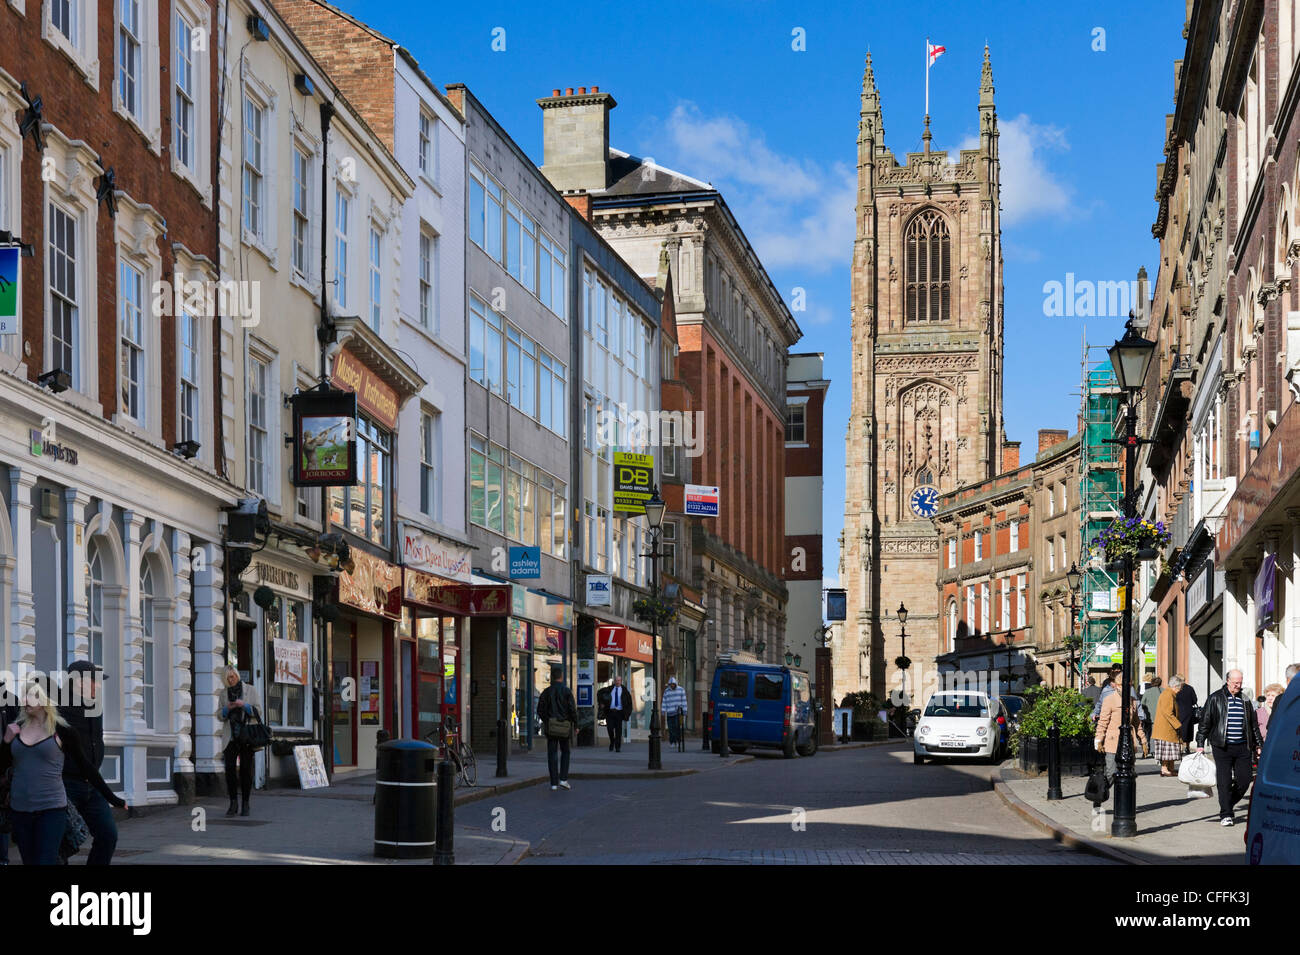 Visualizza in basso cancello di ferro nel centro cittadino che guarda verso la cattedrale, Derby, Derbyshire, East Midlands, England, Regno Unito Foto Stock